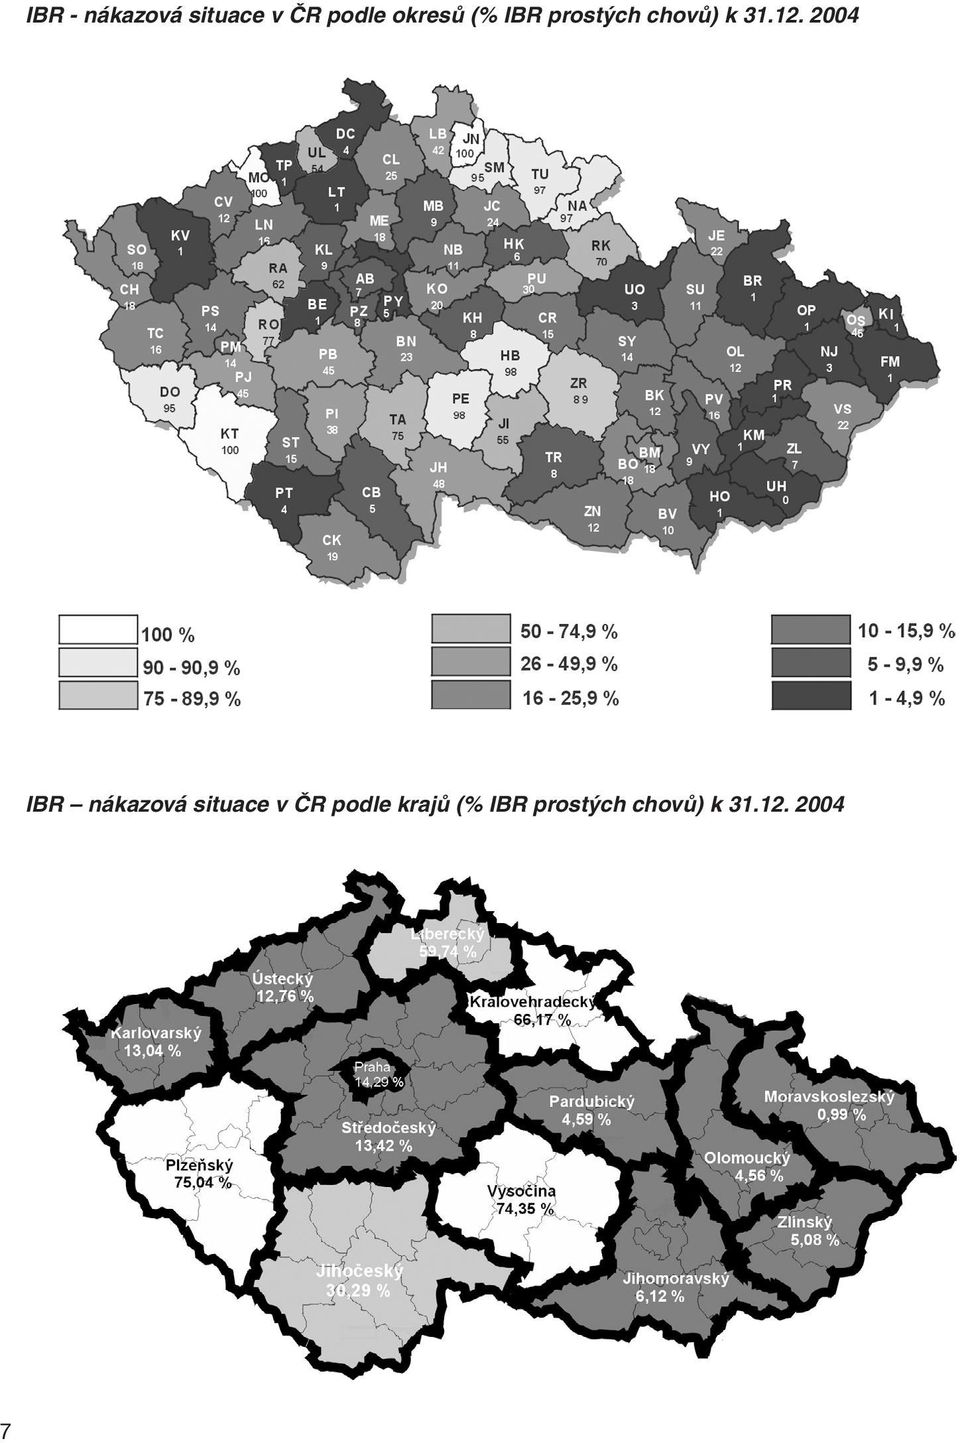 2004 IBR nákazová situace v ČR podle